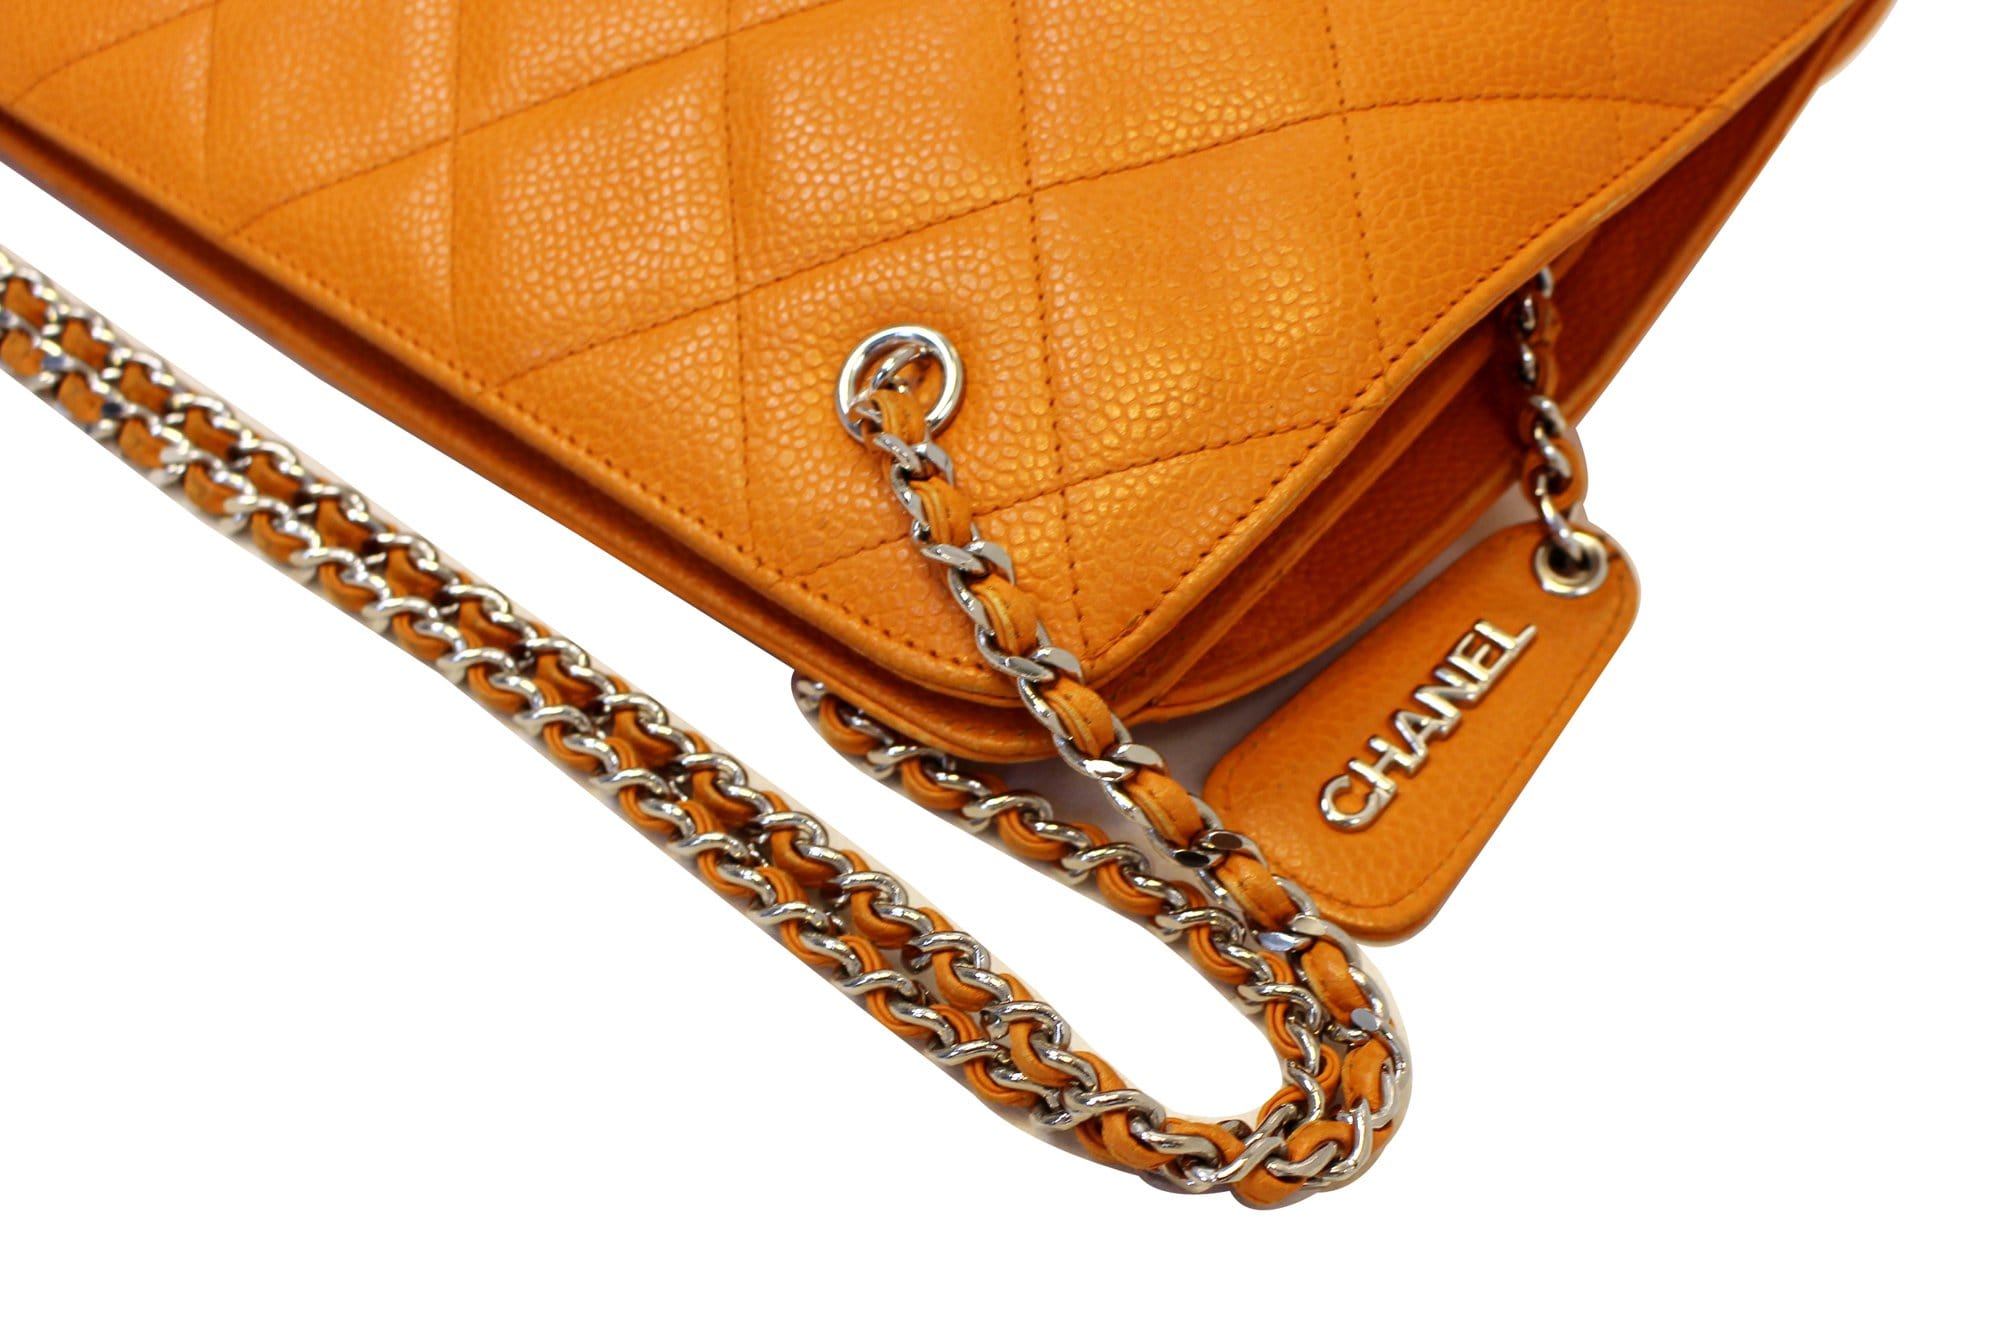 CHANEL Caviar Leather Orange Timeless Shoulder Bag